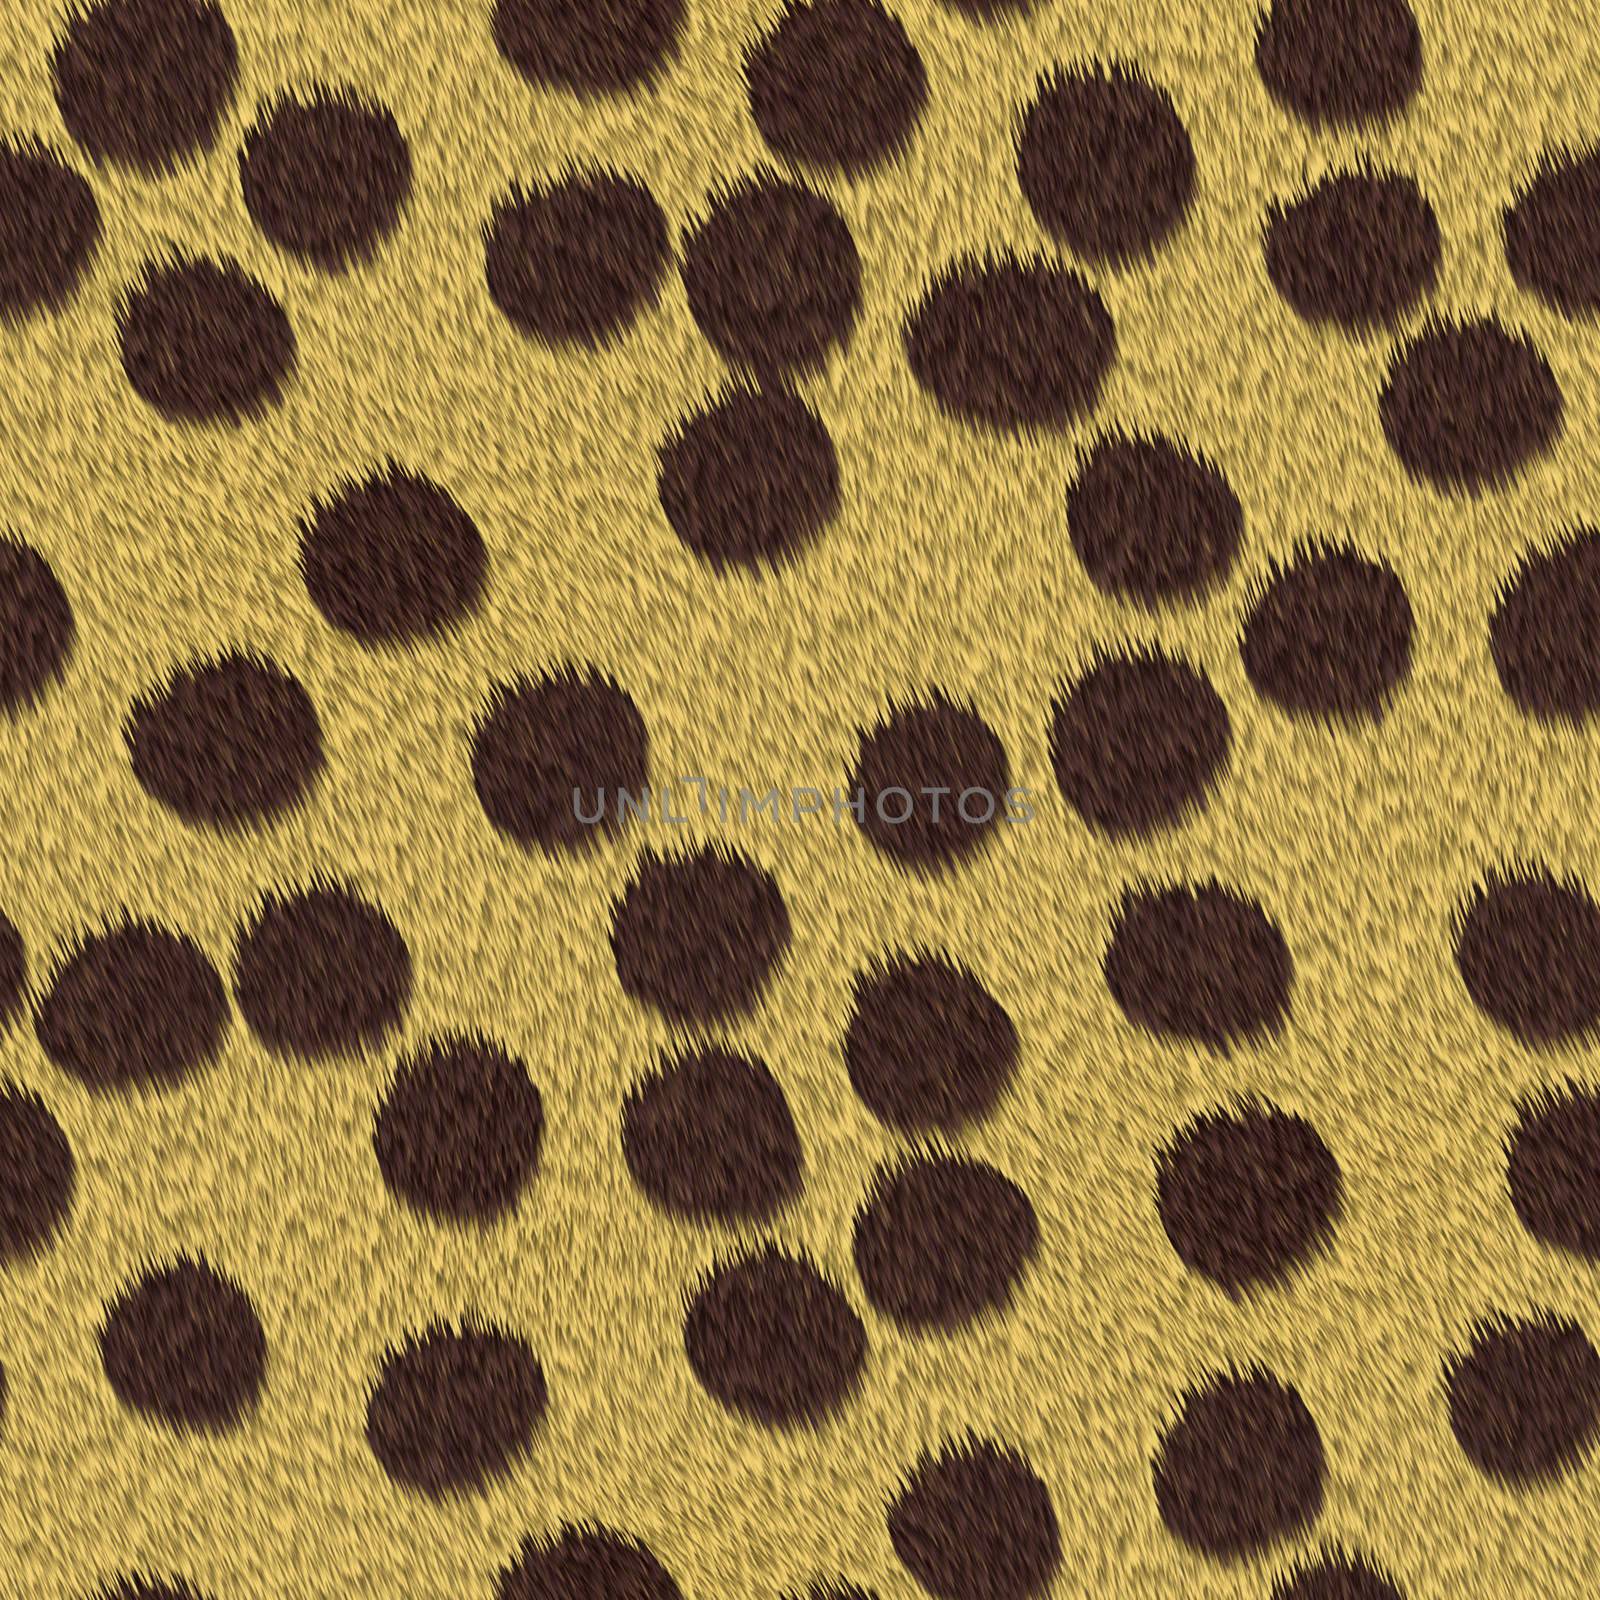 cheetah fur repeating pattern tile